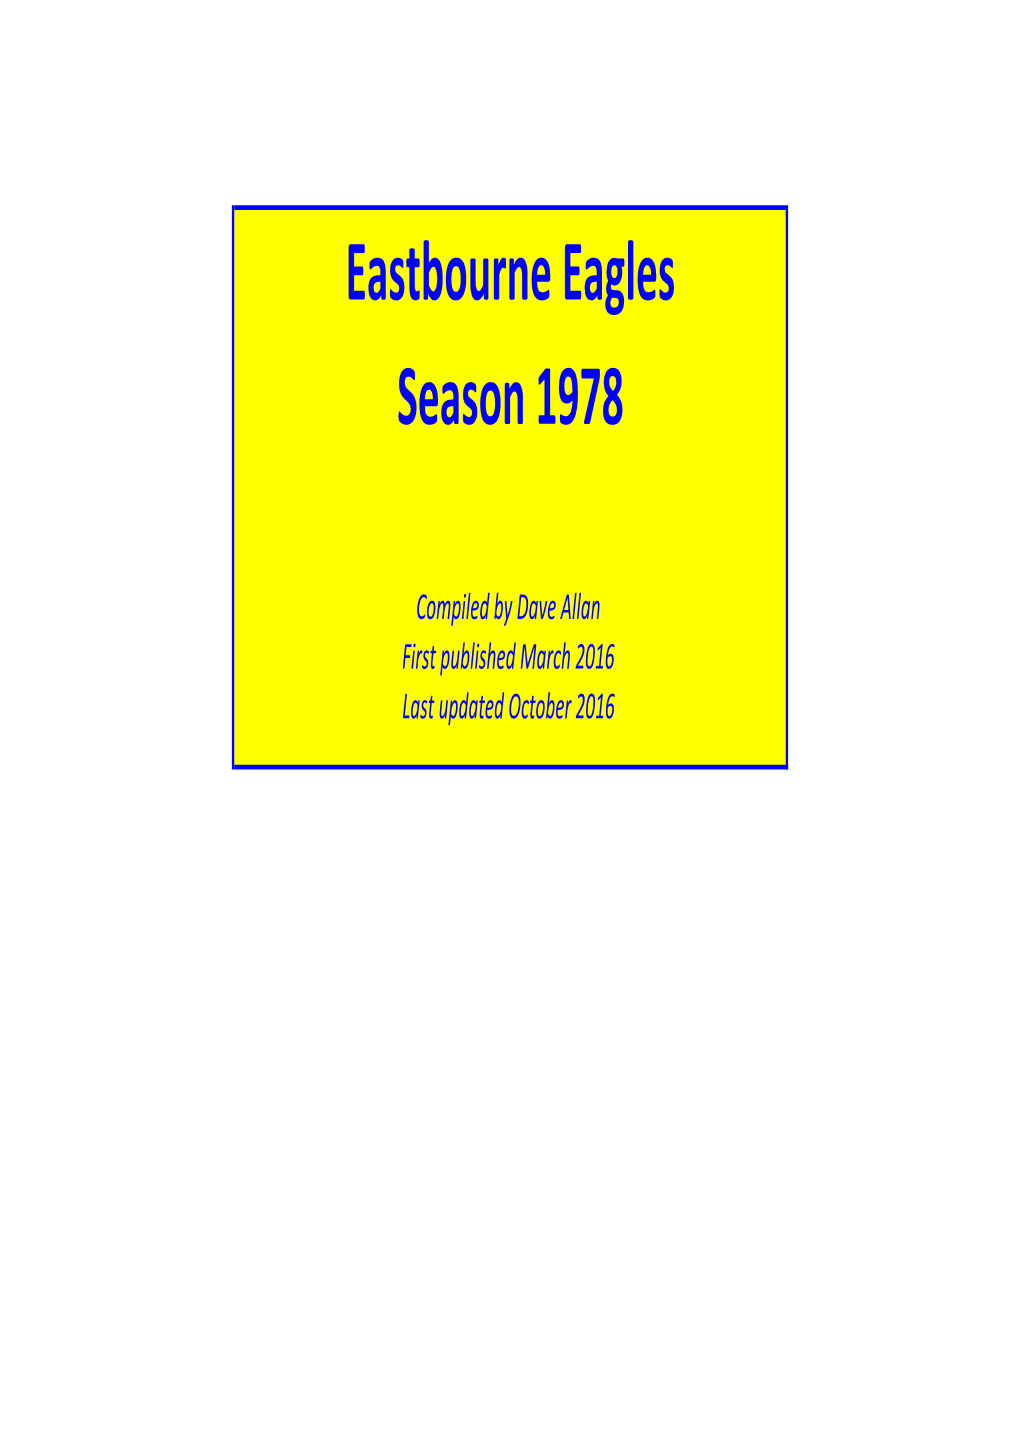 Eastbourne Eagles Season 1978